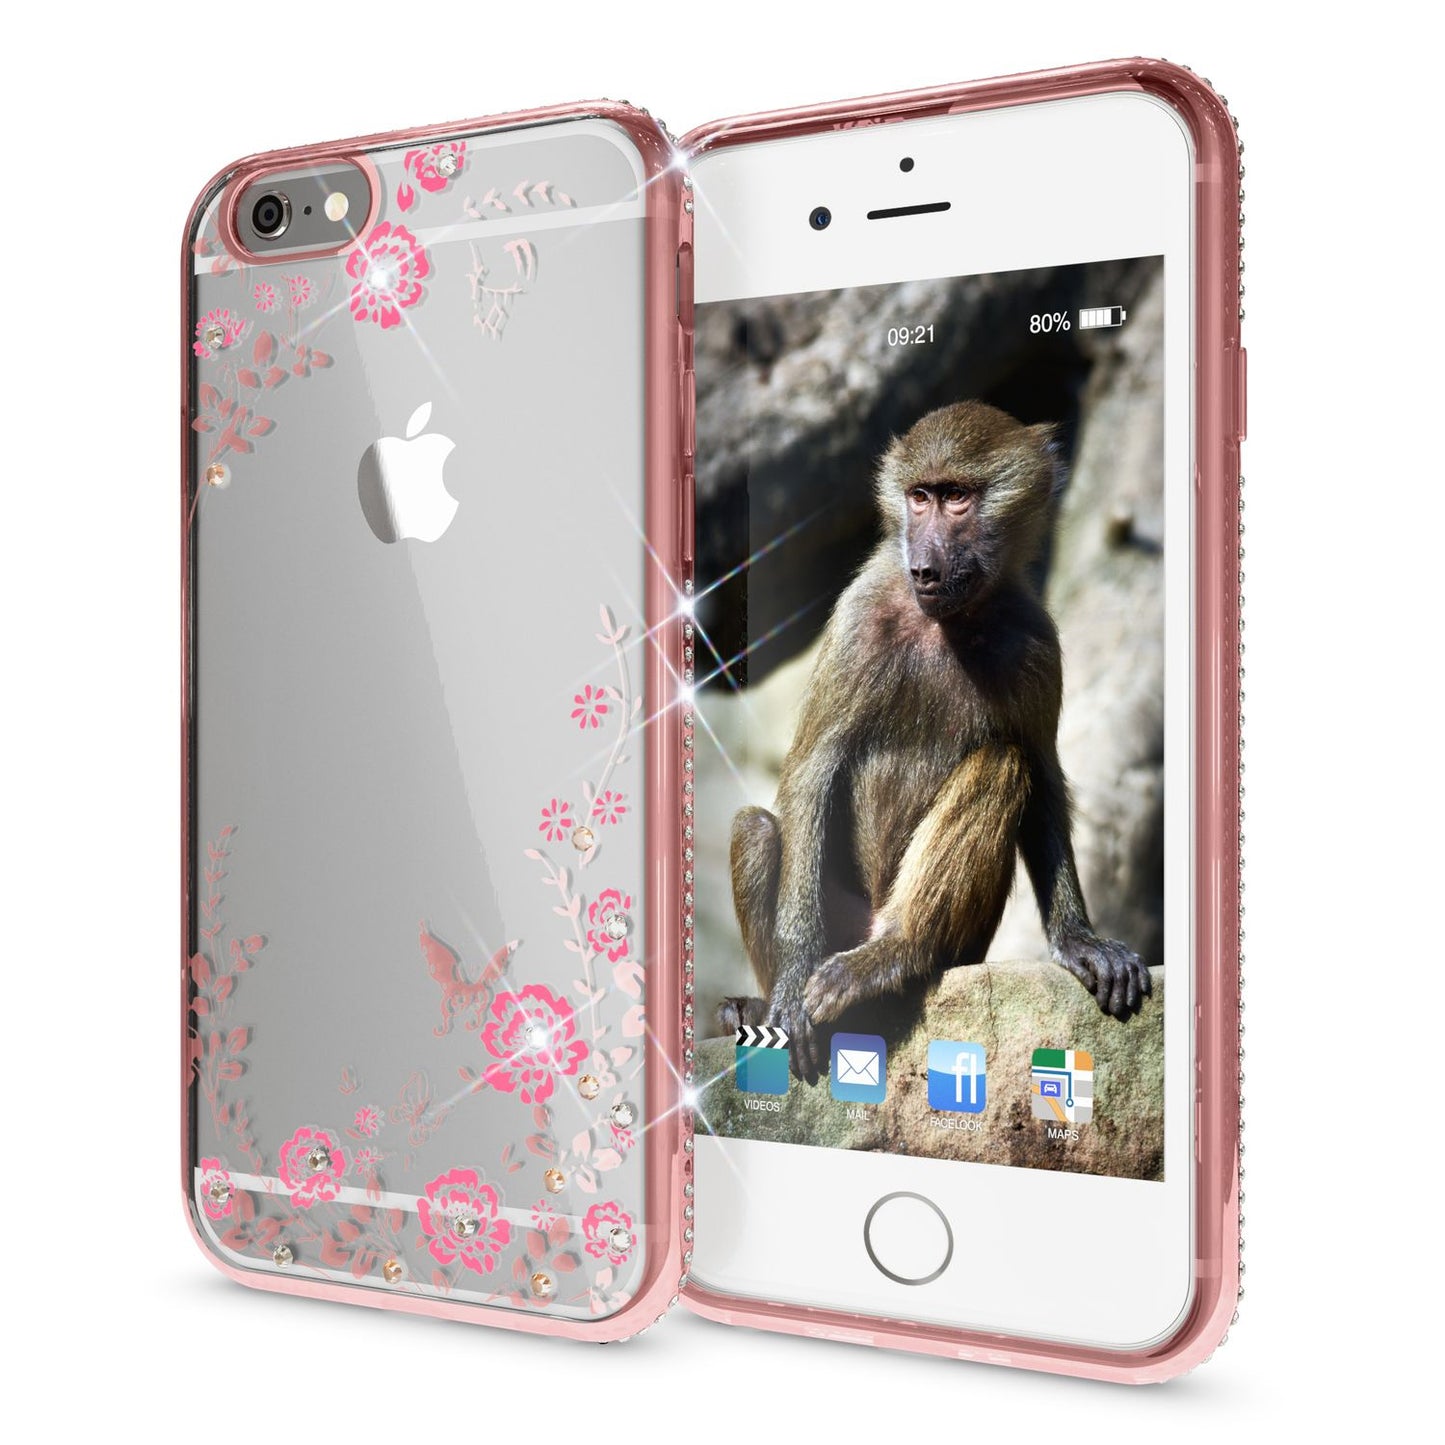 Apple iPhone 6 6S Handy Hülle von NALIA, Durchsichtiges Silikon Case Blumen Cover